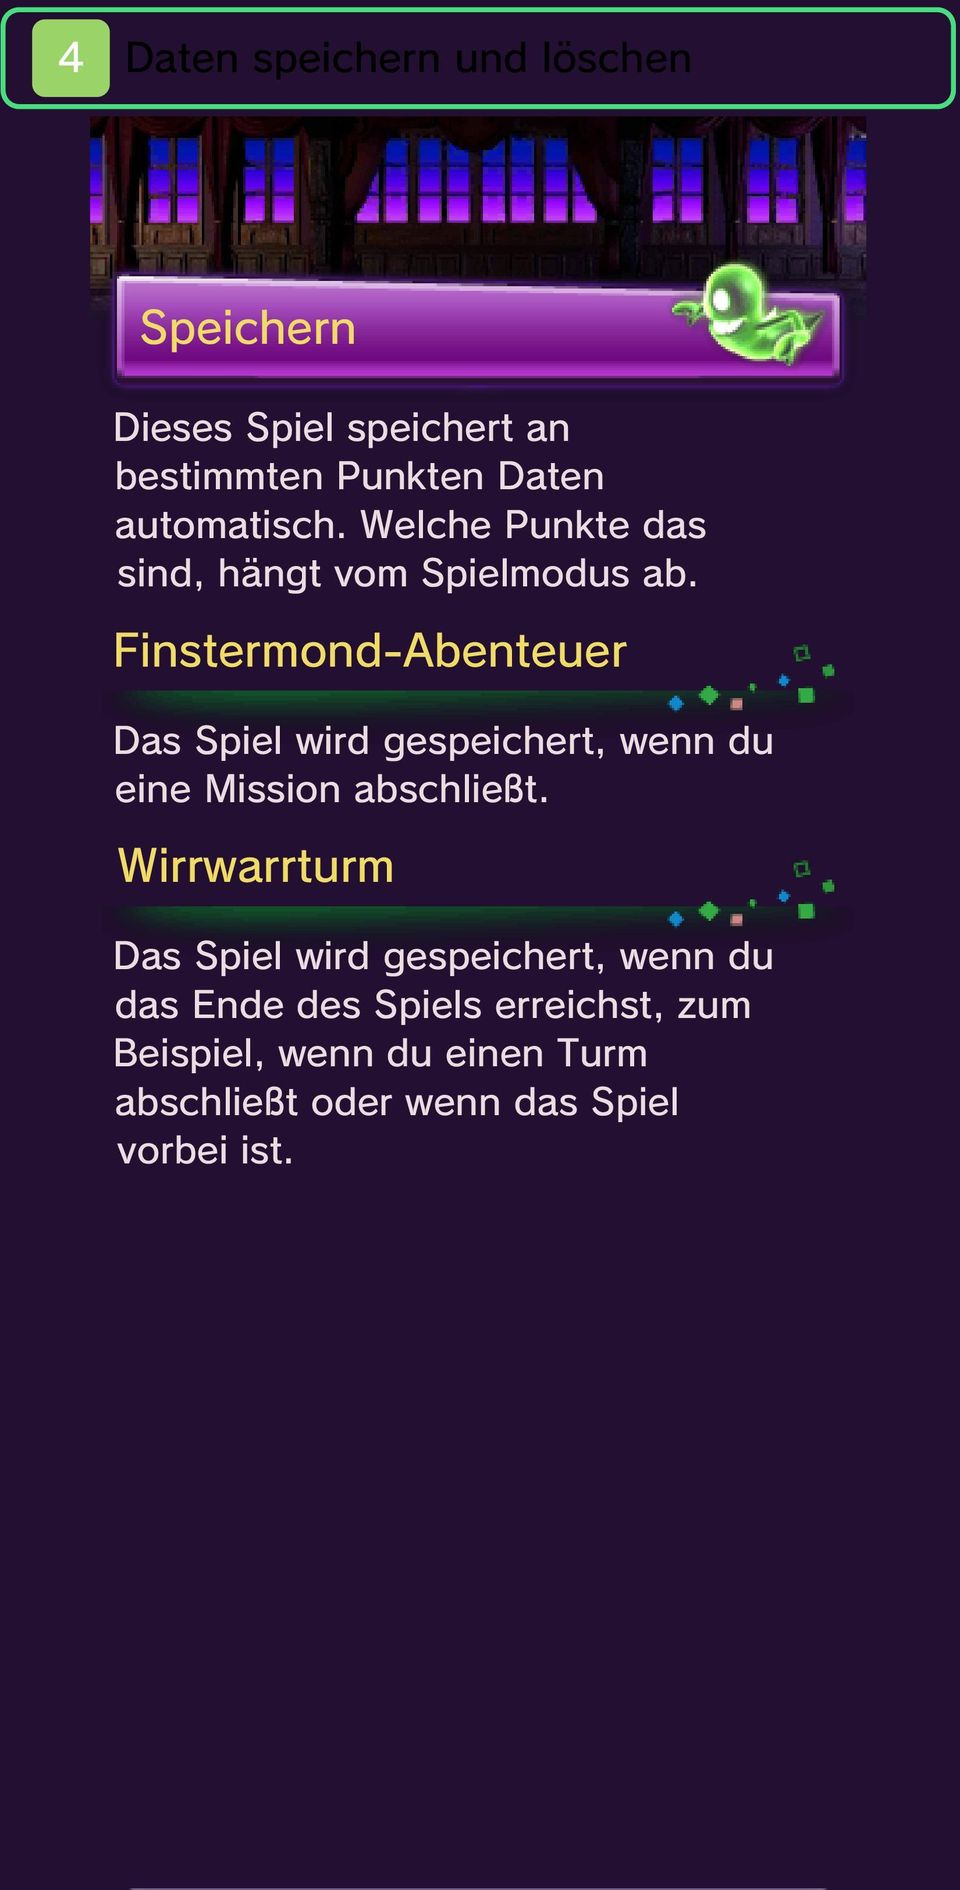 Finstermond-Abenteuer Das Spiel wird gespeichert, wenn du eine Mission abschließt.